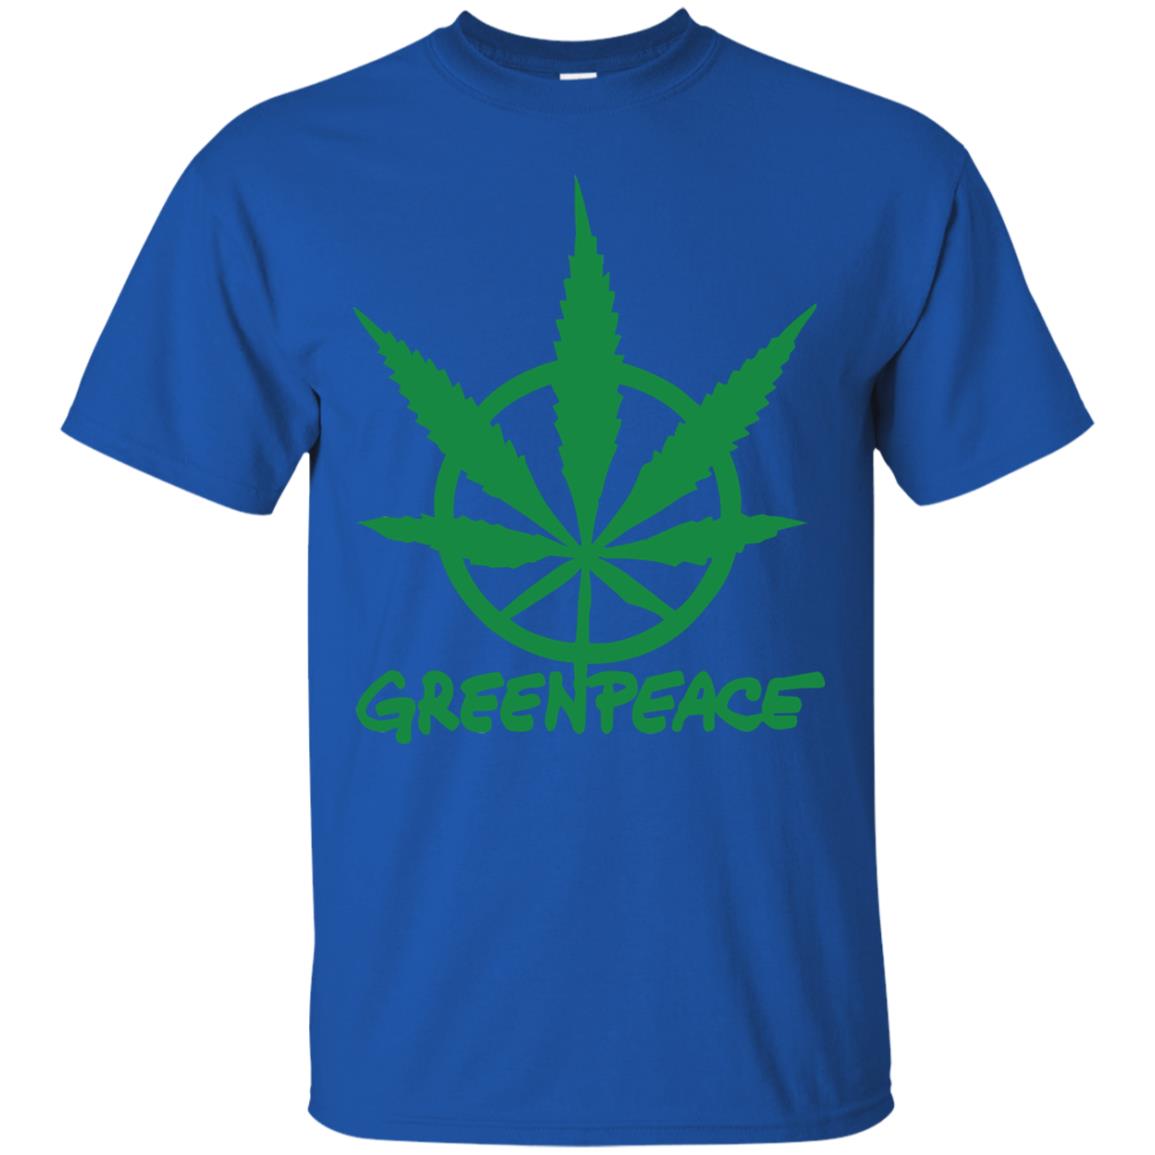 Greenpeace Sweatshirt - 10% Off - FavorMerch